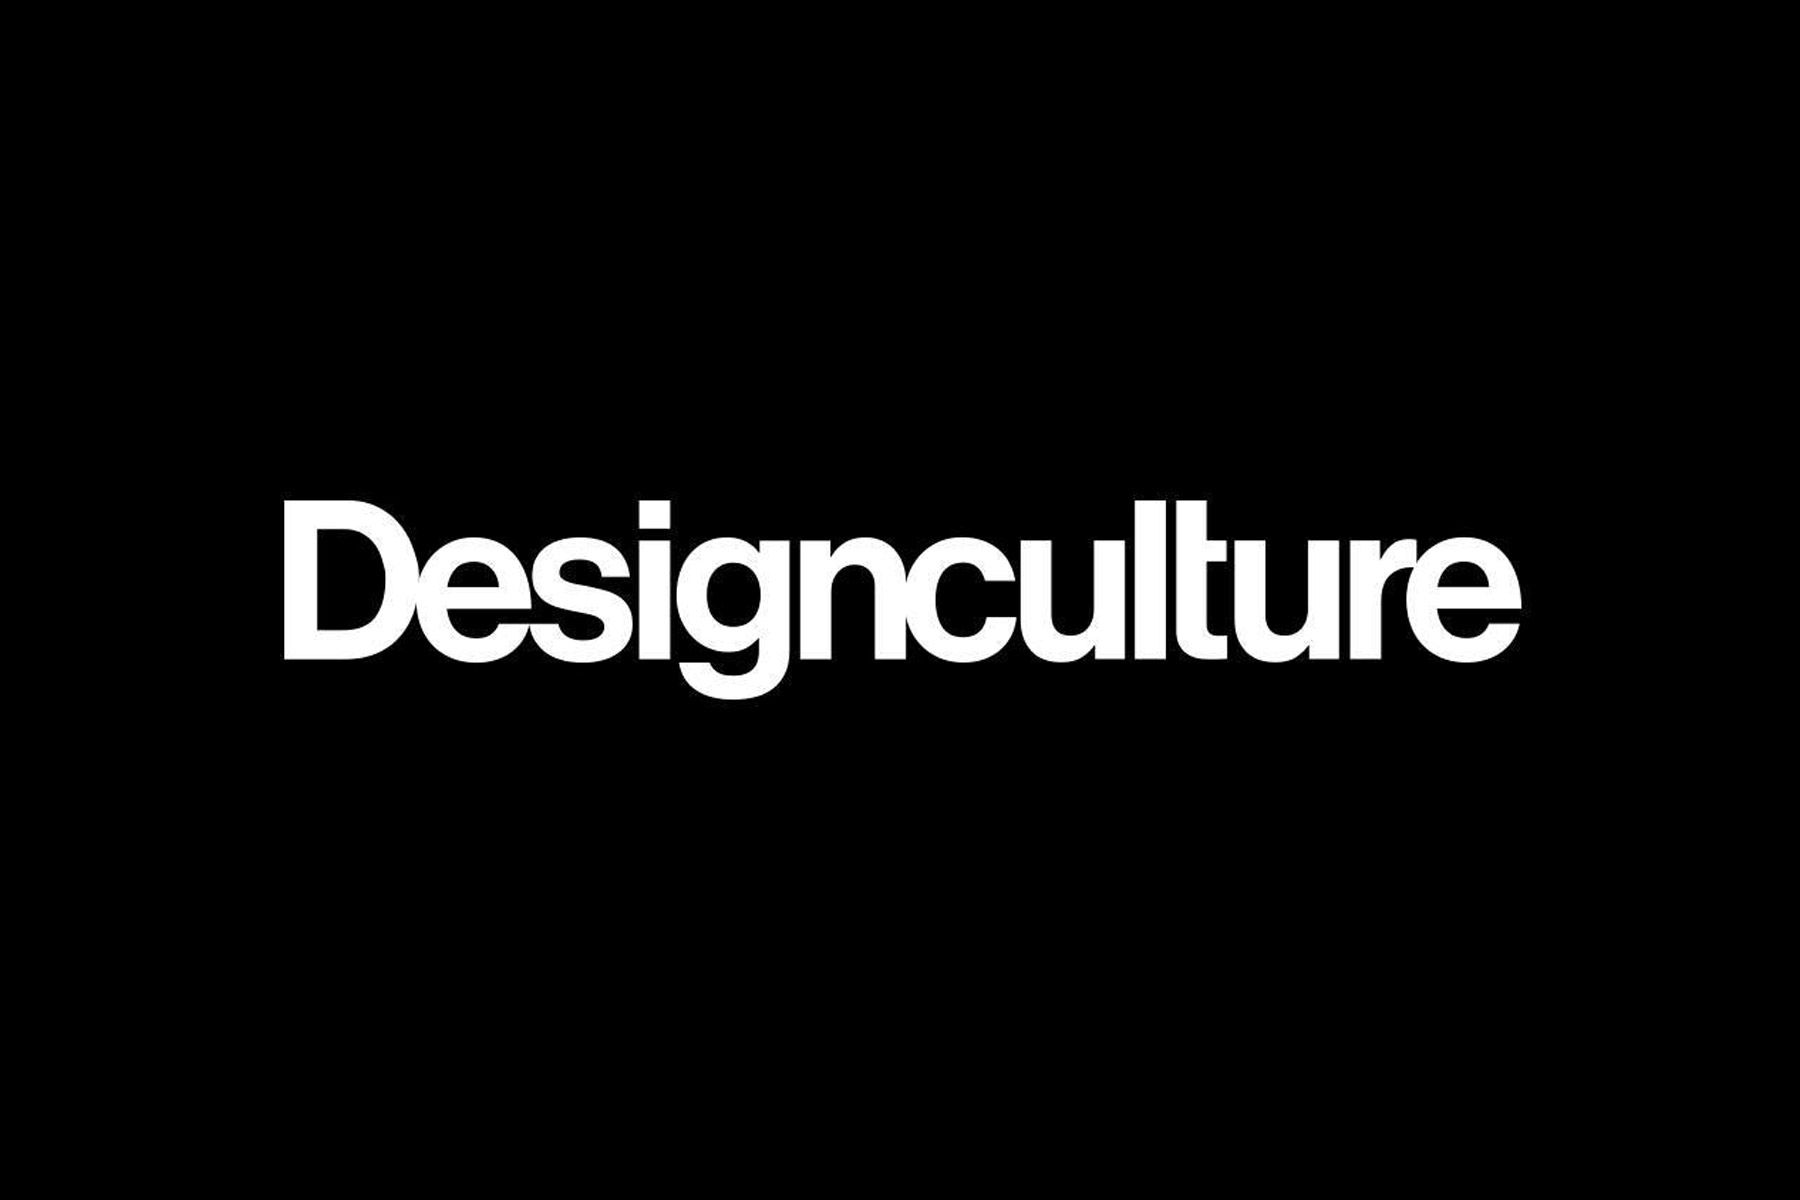 designculture logo